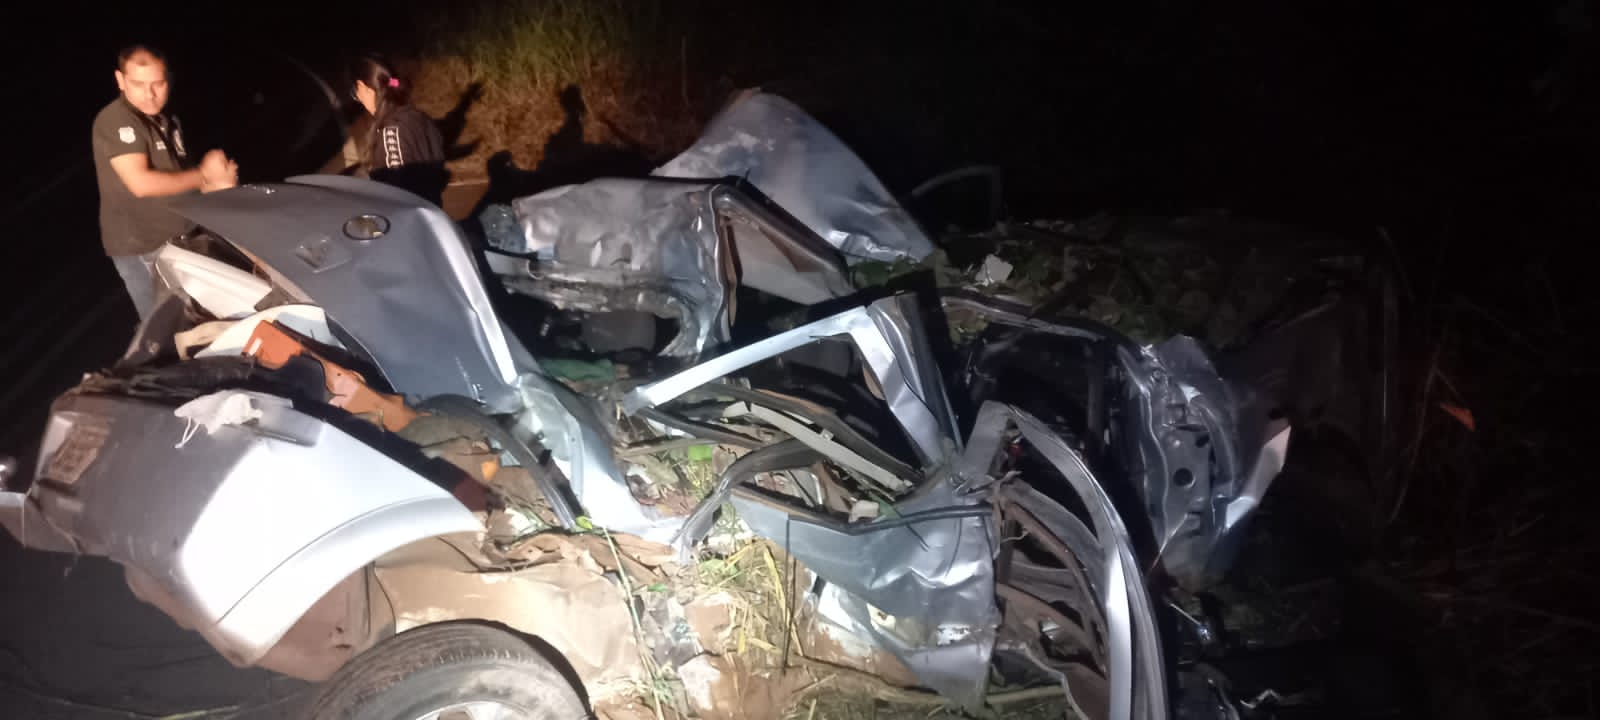 Tragédia deixa 5 pessoas mortas em rodovia de Mato Grosso 4